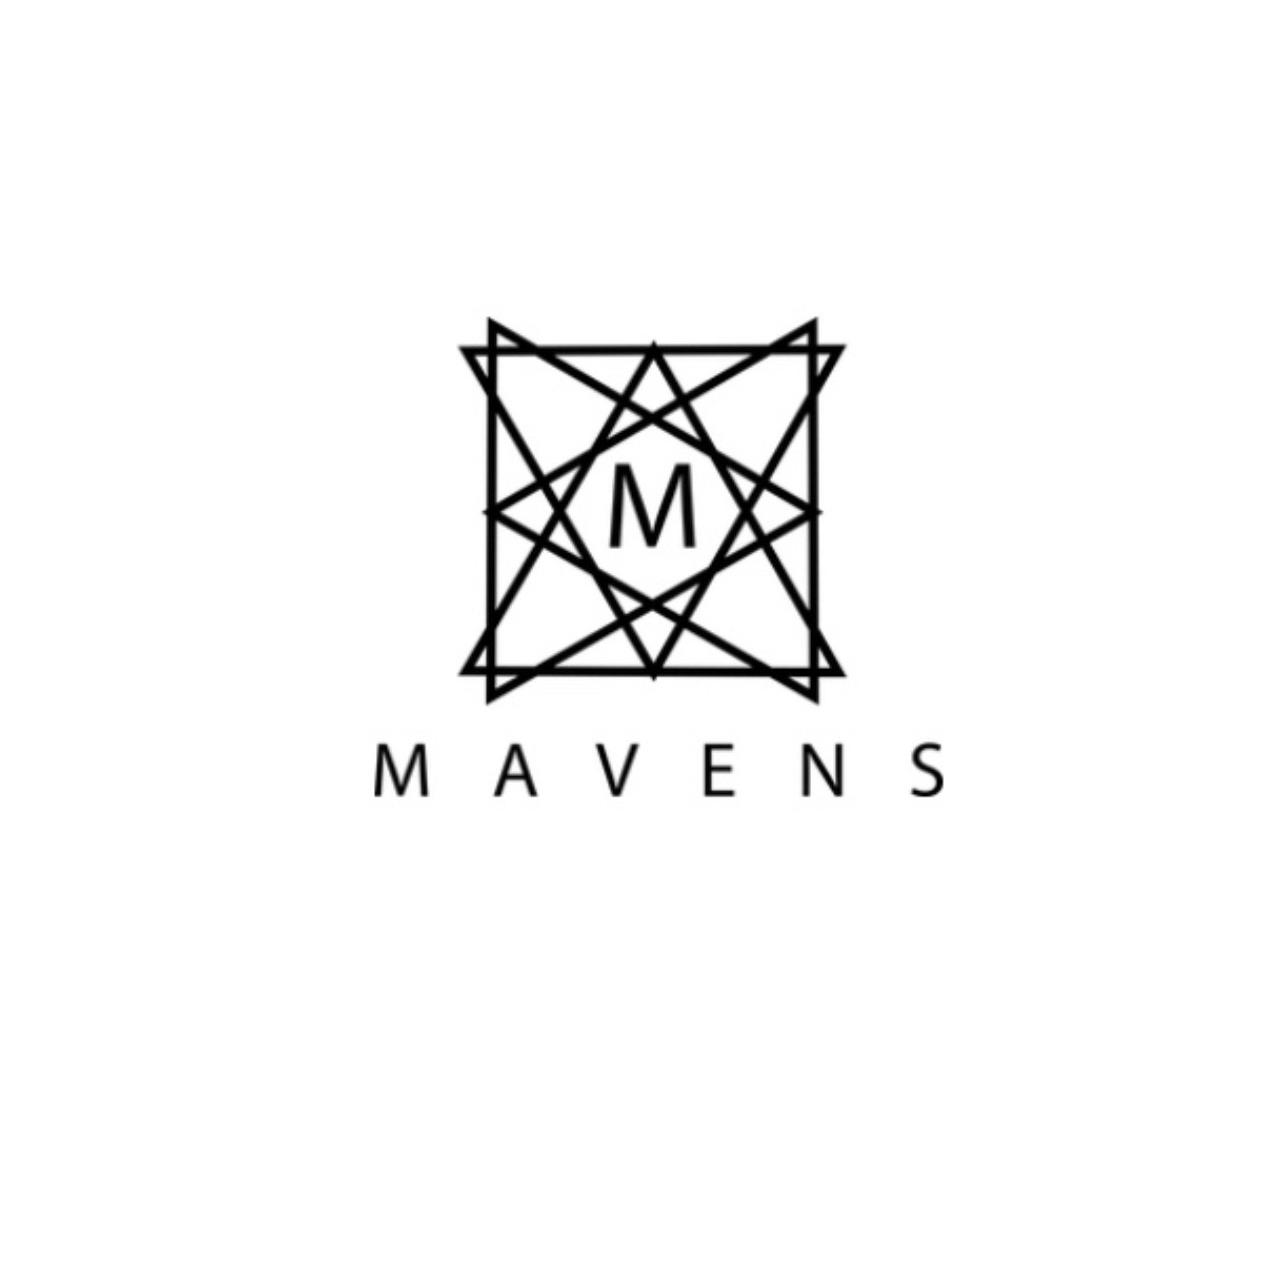 Mavens.Co's images